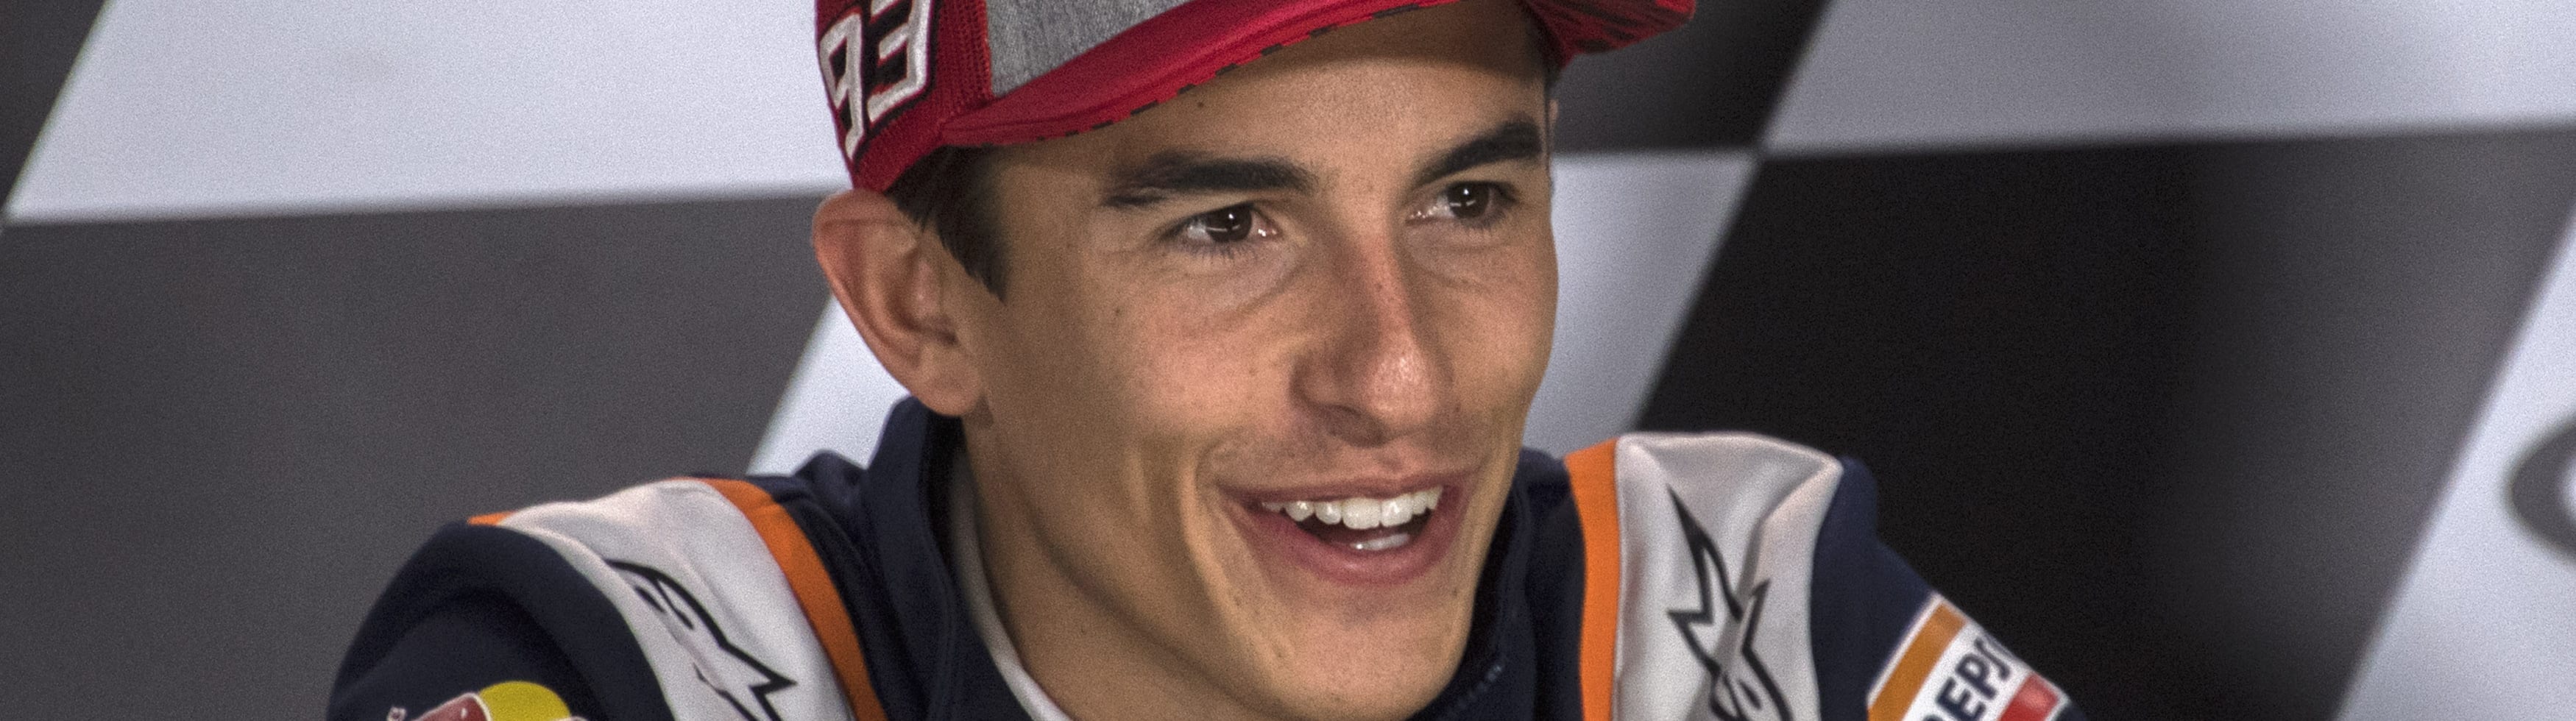 GP Germania: Marquez punta al settebello consecutivo sul Sachsenring